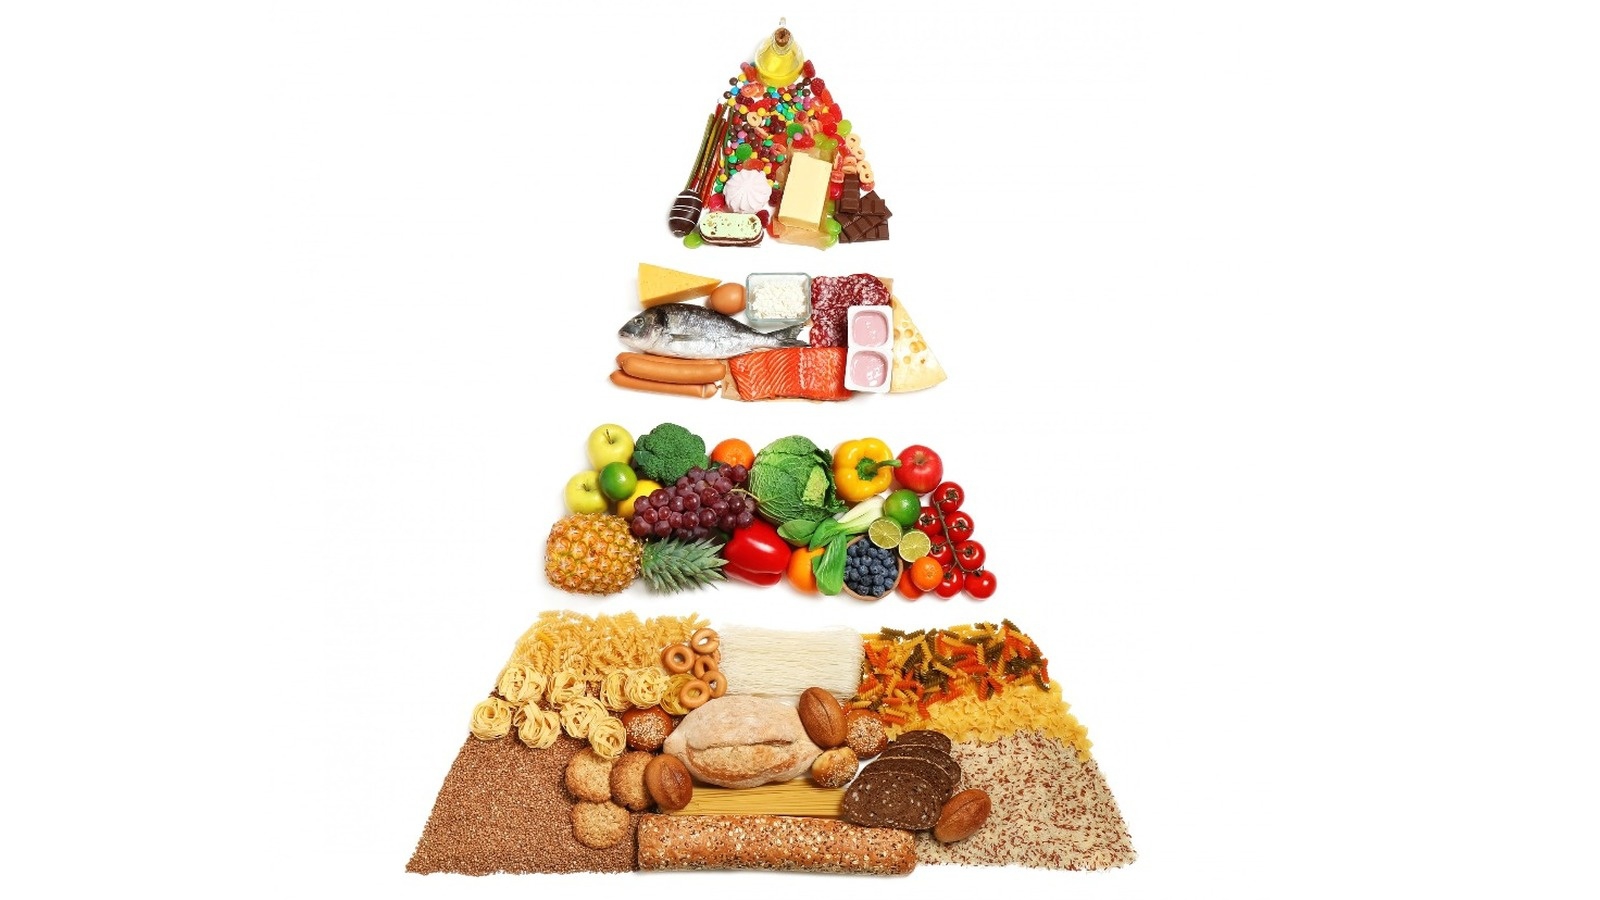 Có những tiêu chí nào để lựa chọn thực phẩm cho tháp dinh dưỡng của trẻ 1-2 tuổi?
